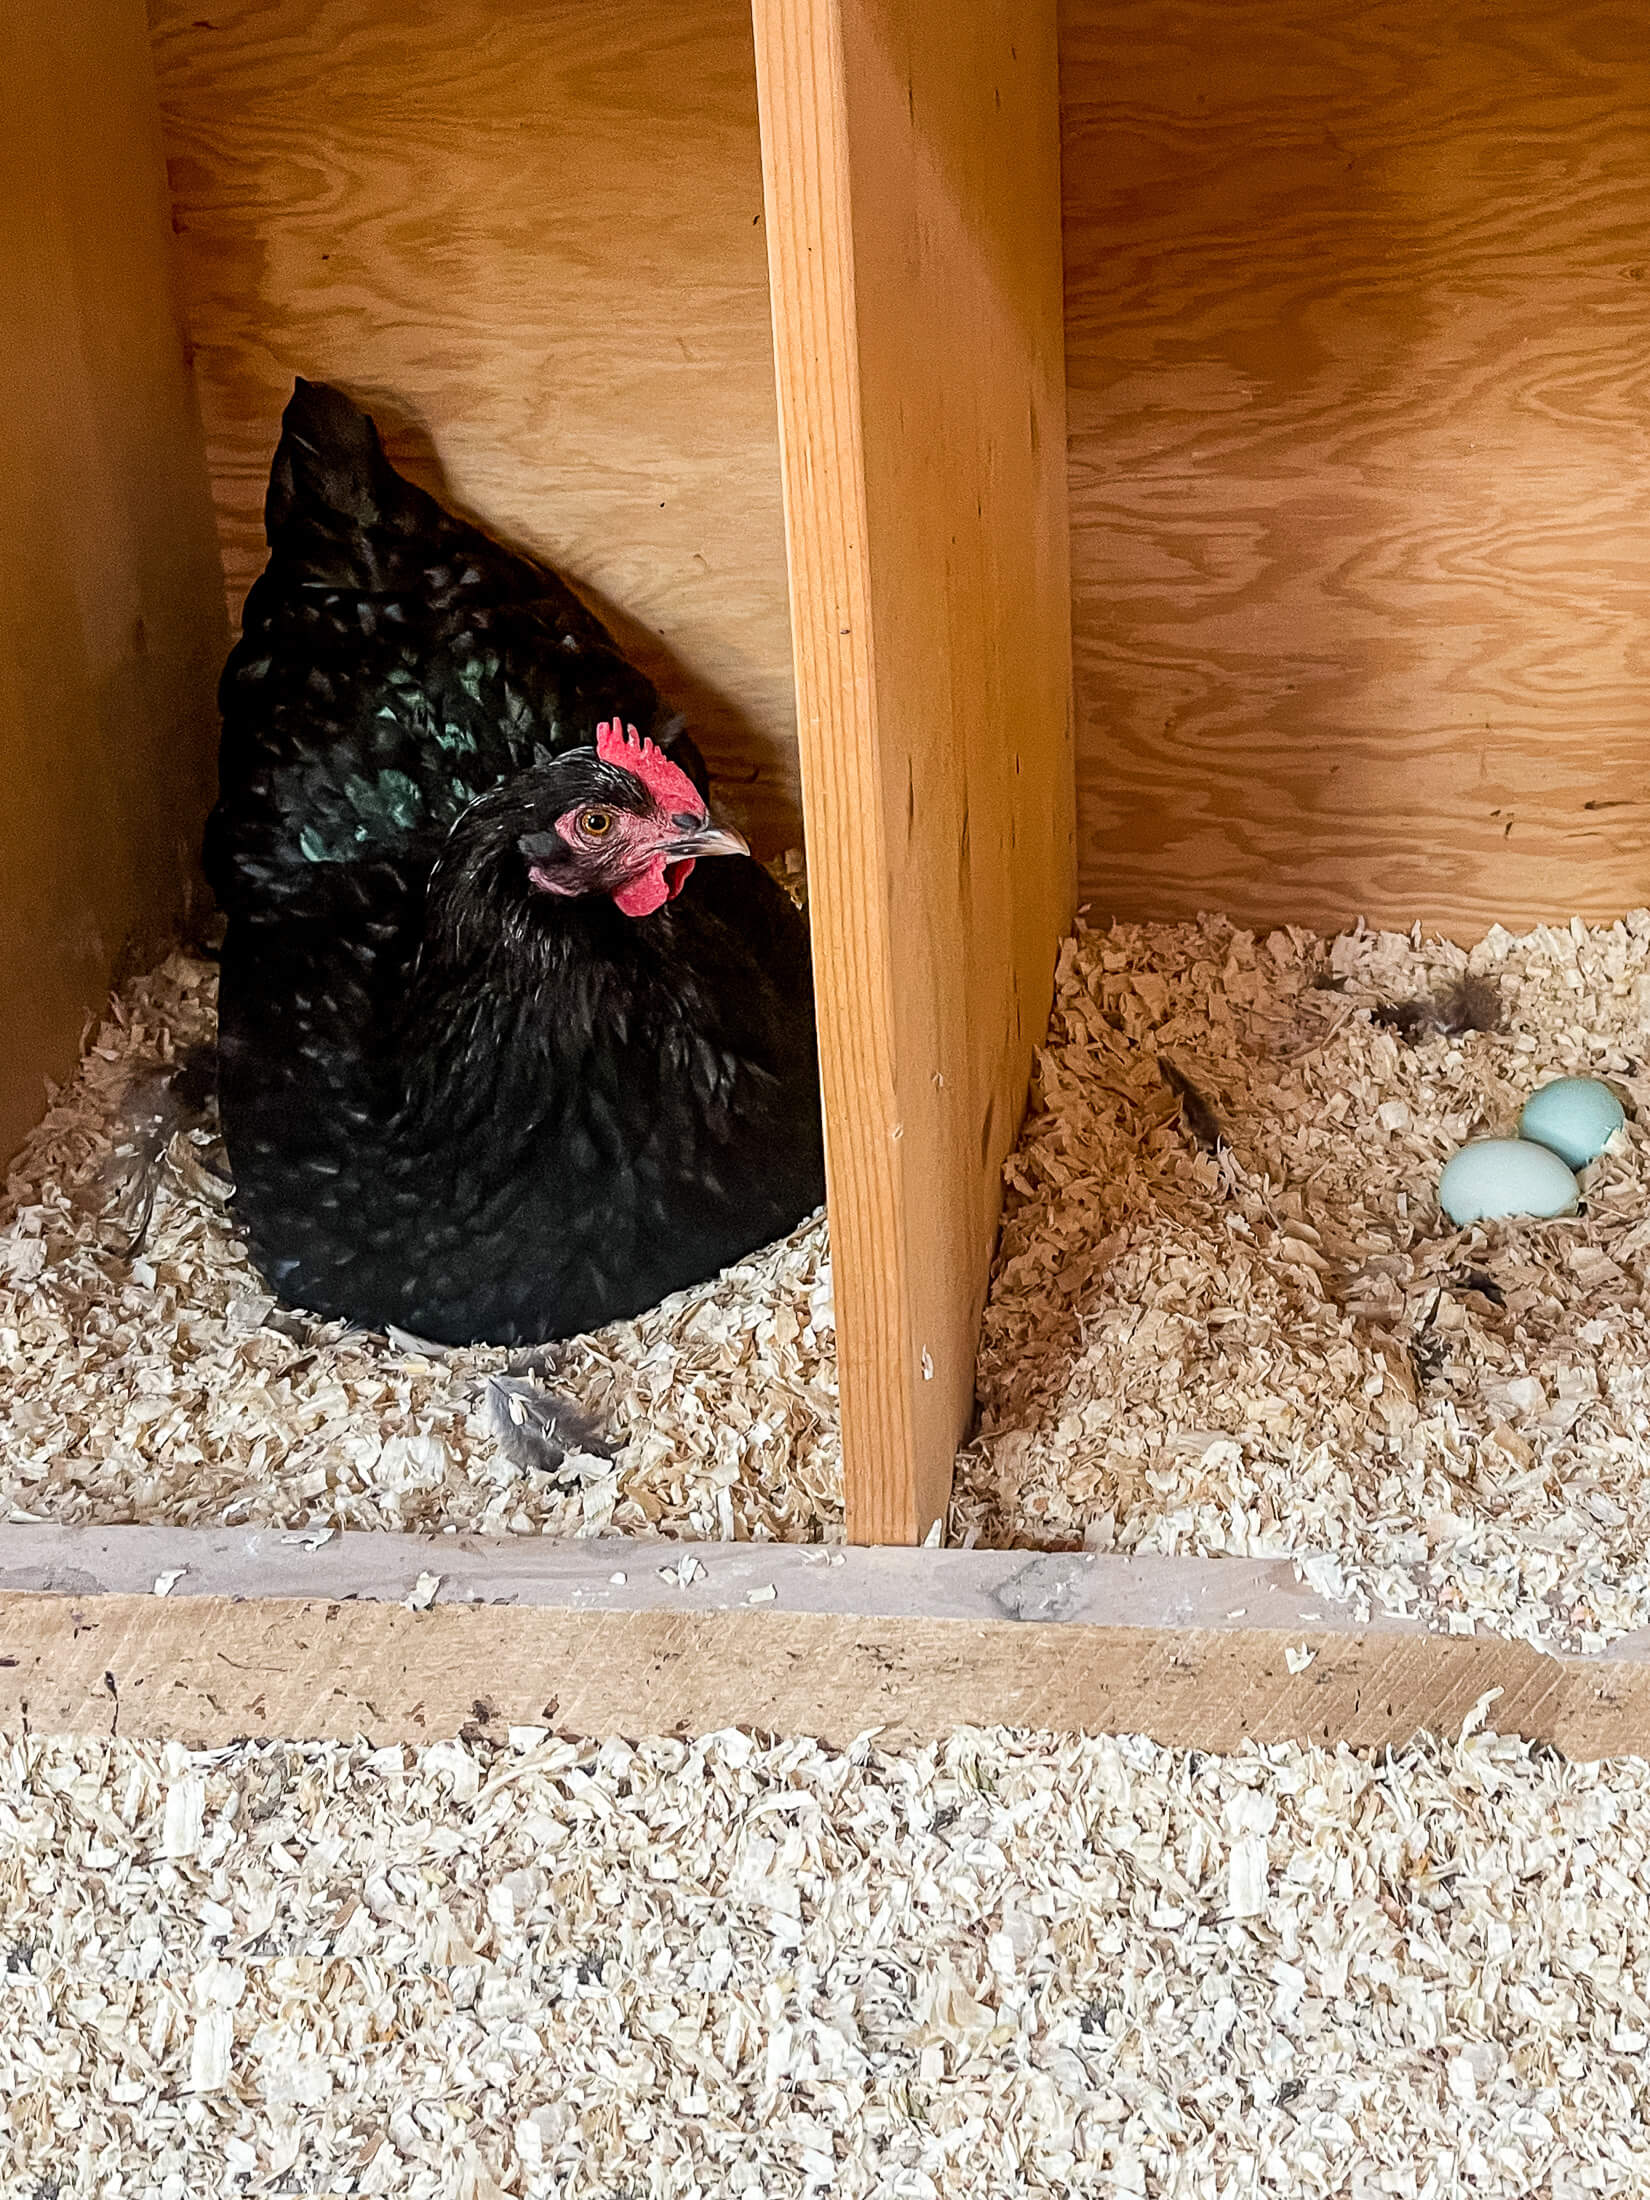 Black chicken in nesting box.